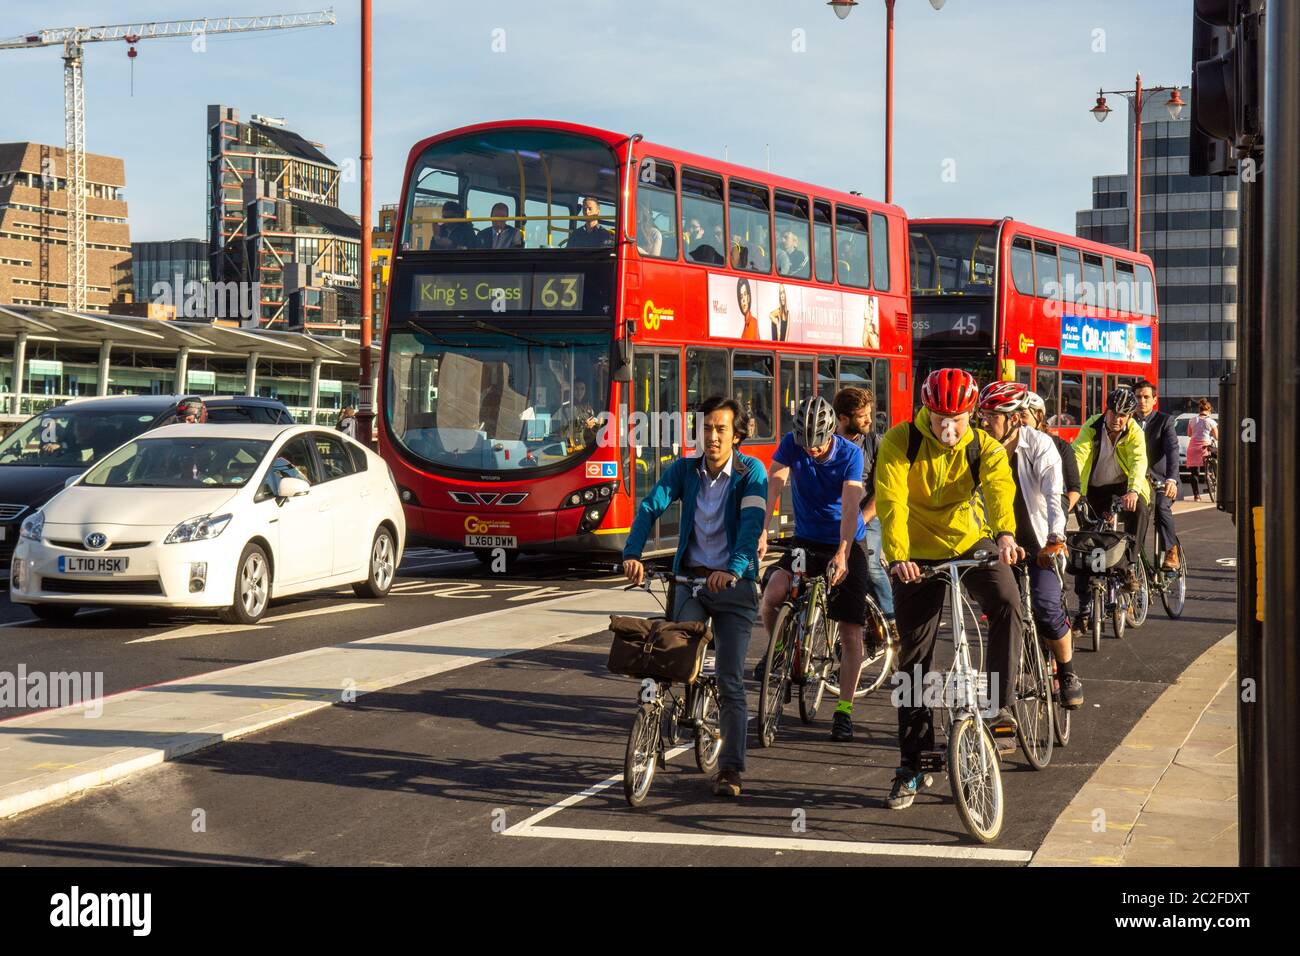 Londres, Inglaterra - 4 de mayo de 2016: Los ciclistsesperan en una señal de tráfico junto a los autobuses de dos pisos en la nueva autopista Cycle SuperHighway de Londres en el puente Blackfriars Foto de stock